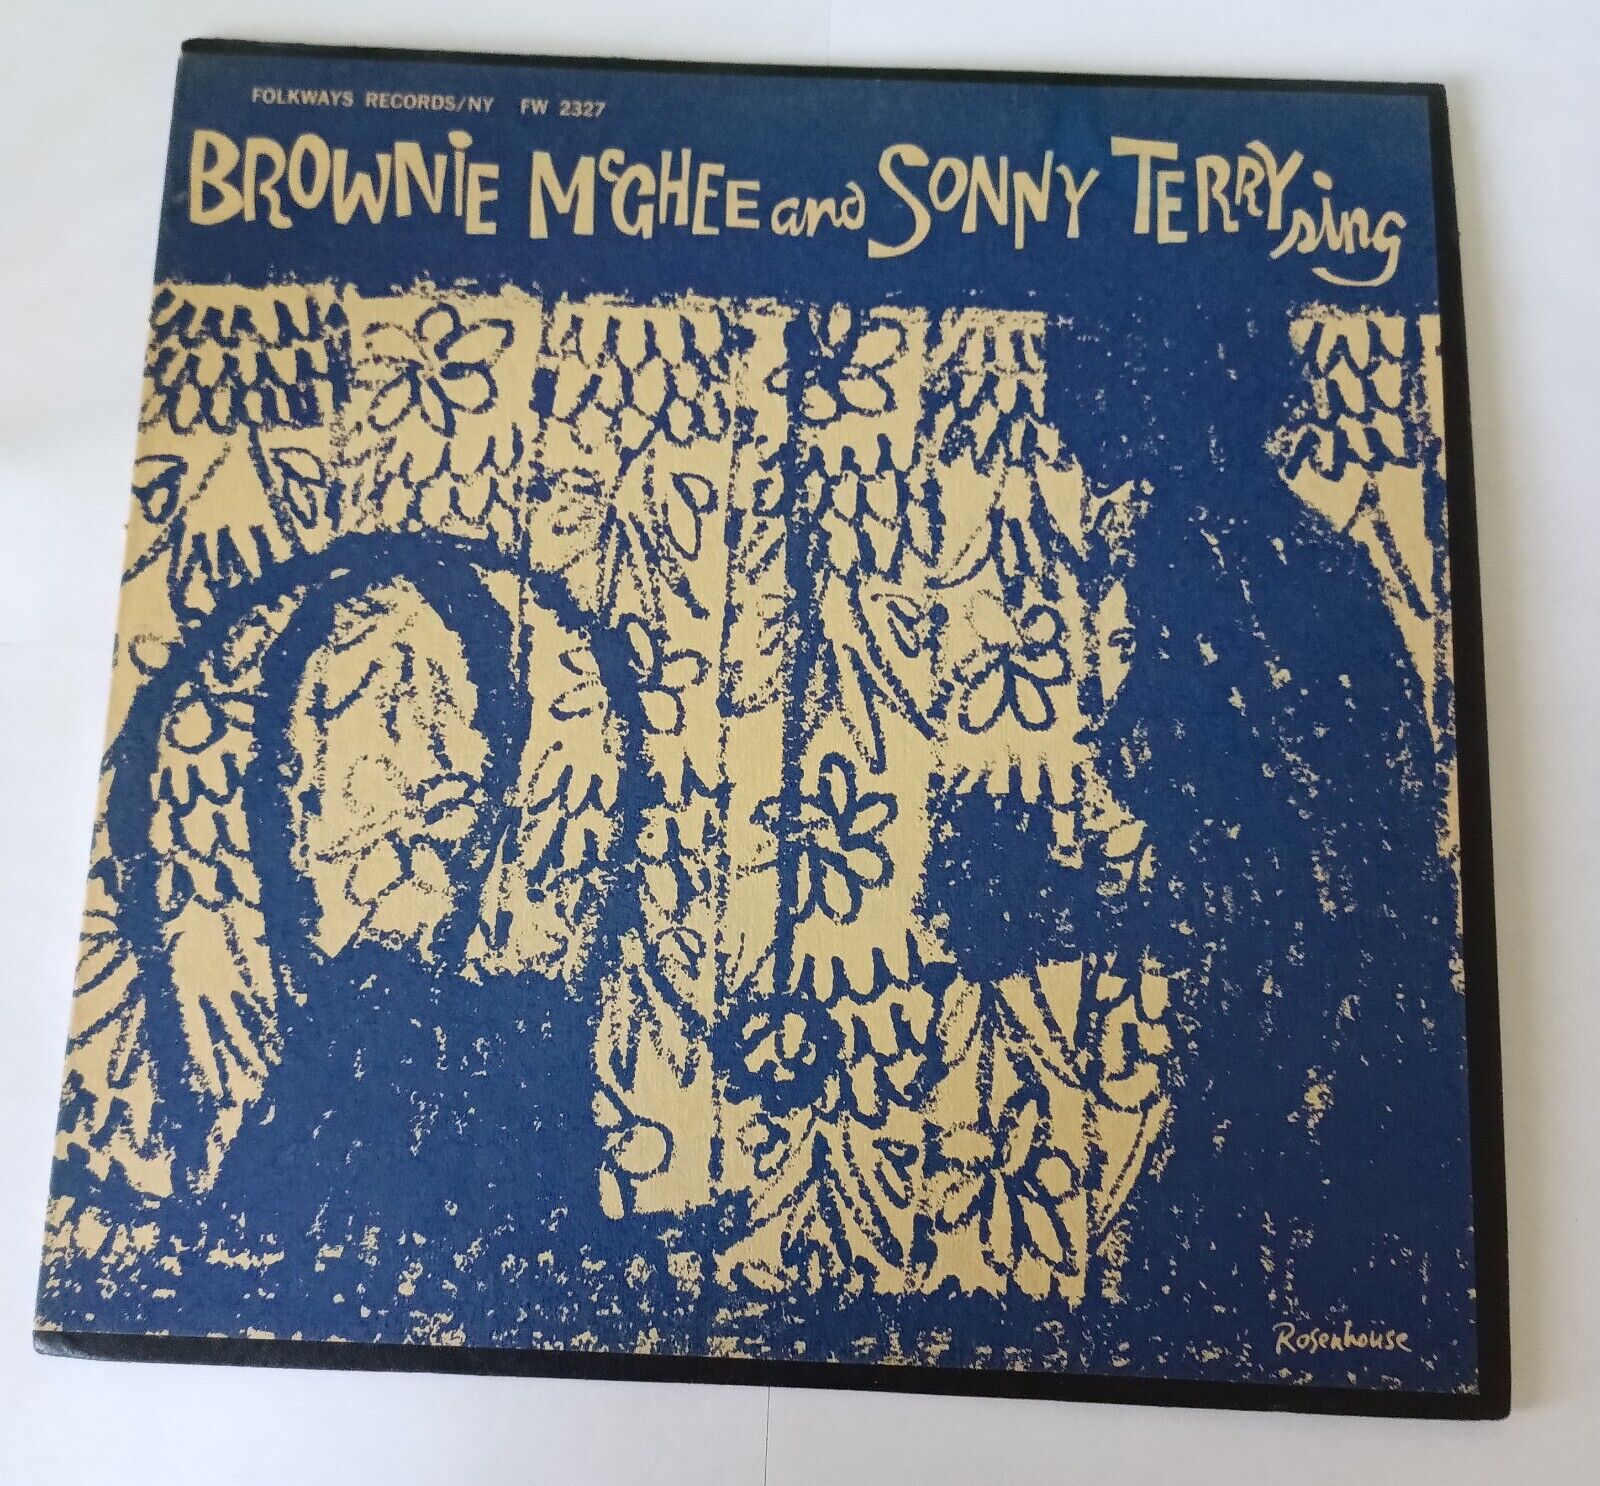 Brownie McGhee & Sonny Terry Sing Vinyl Lp 1958 Ultrasonic Clean VG/VG